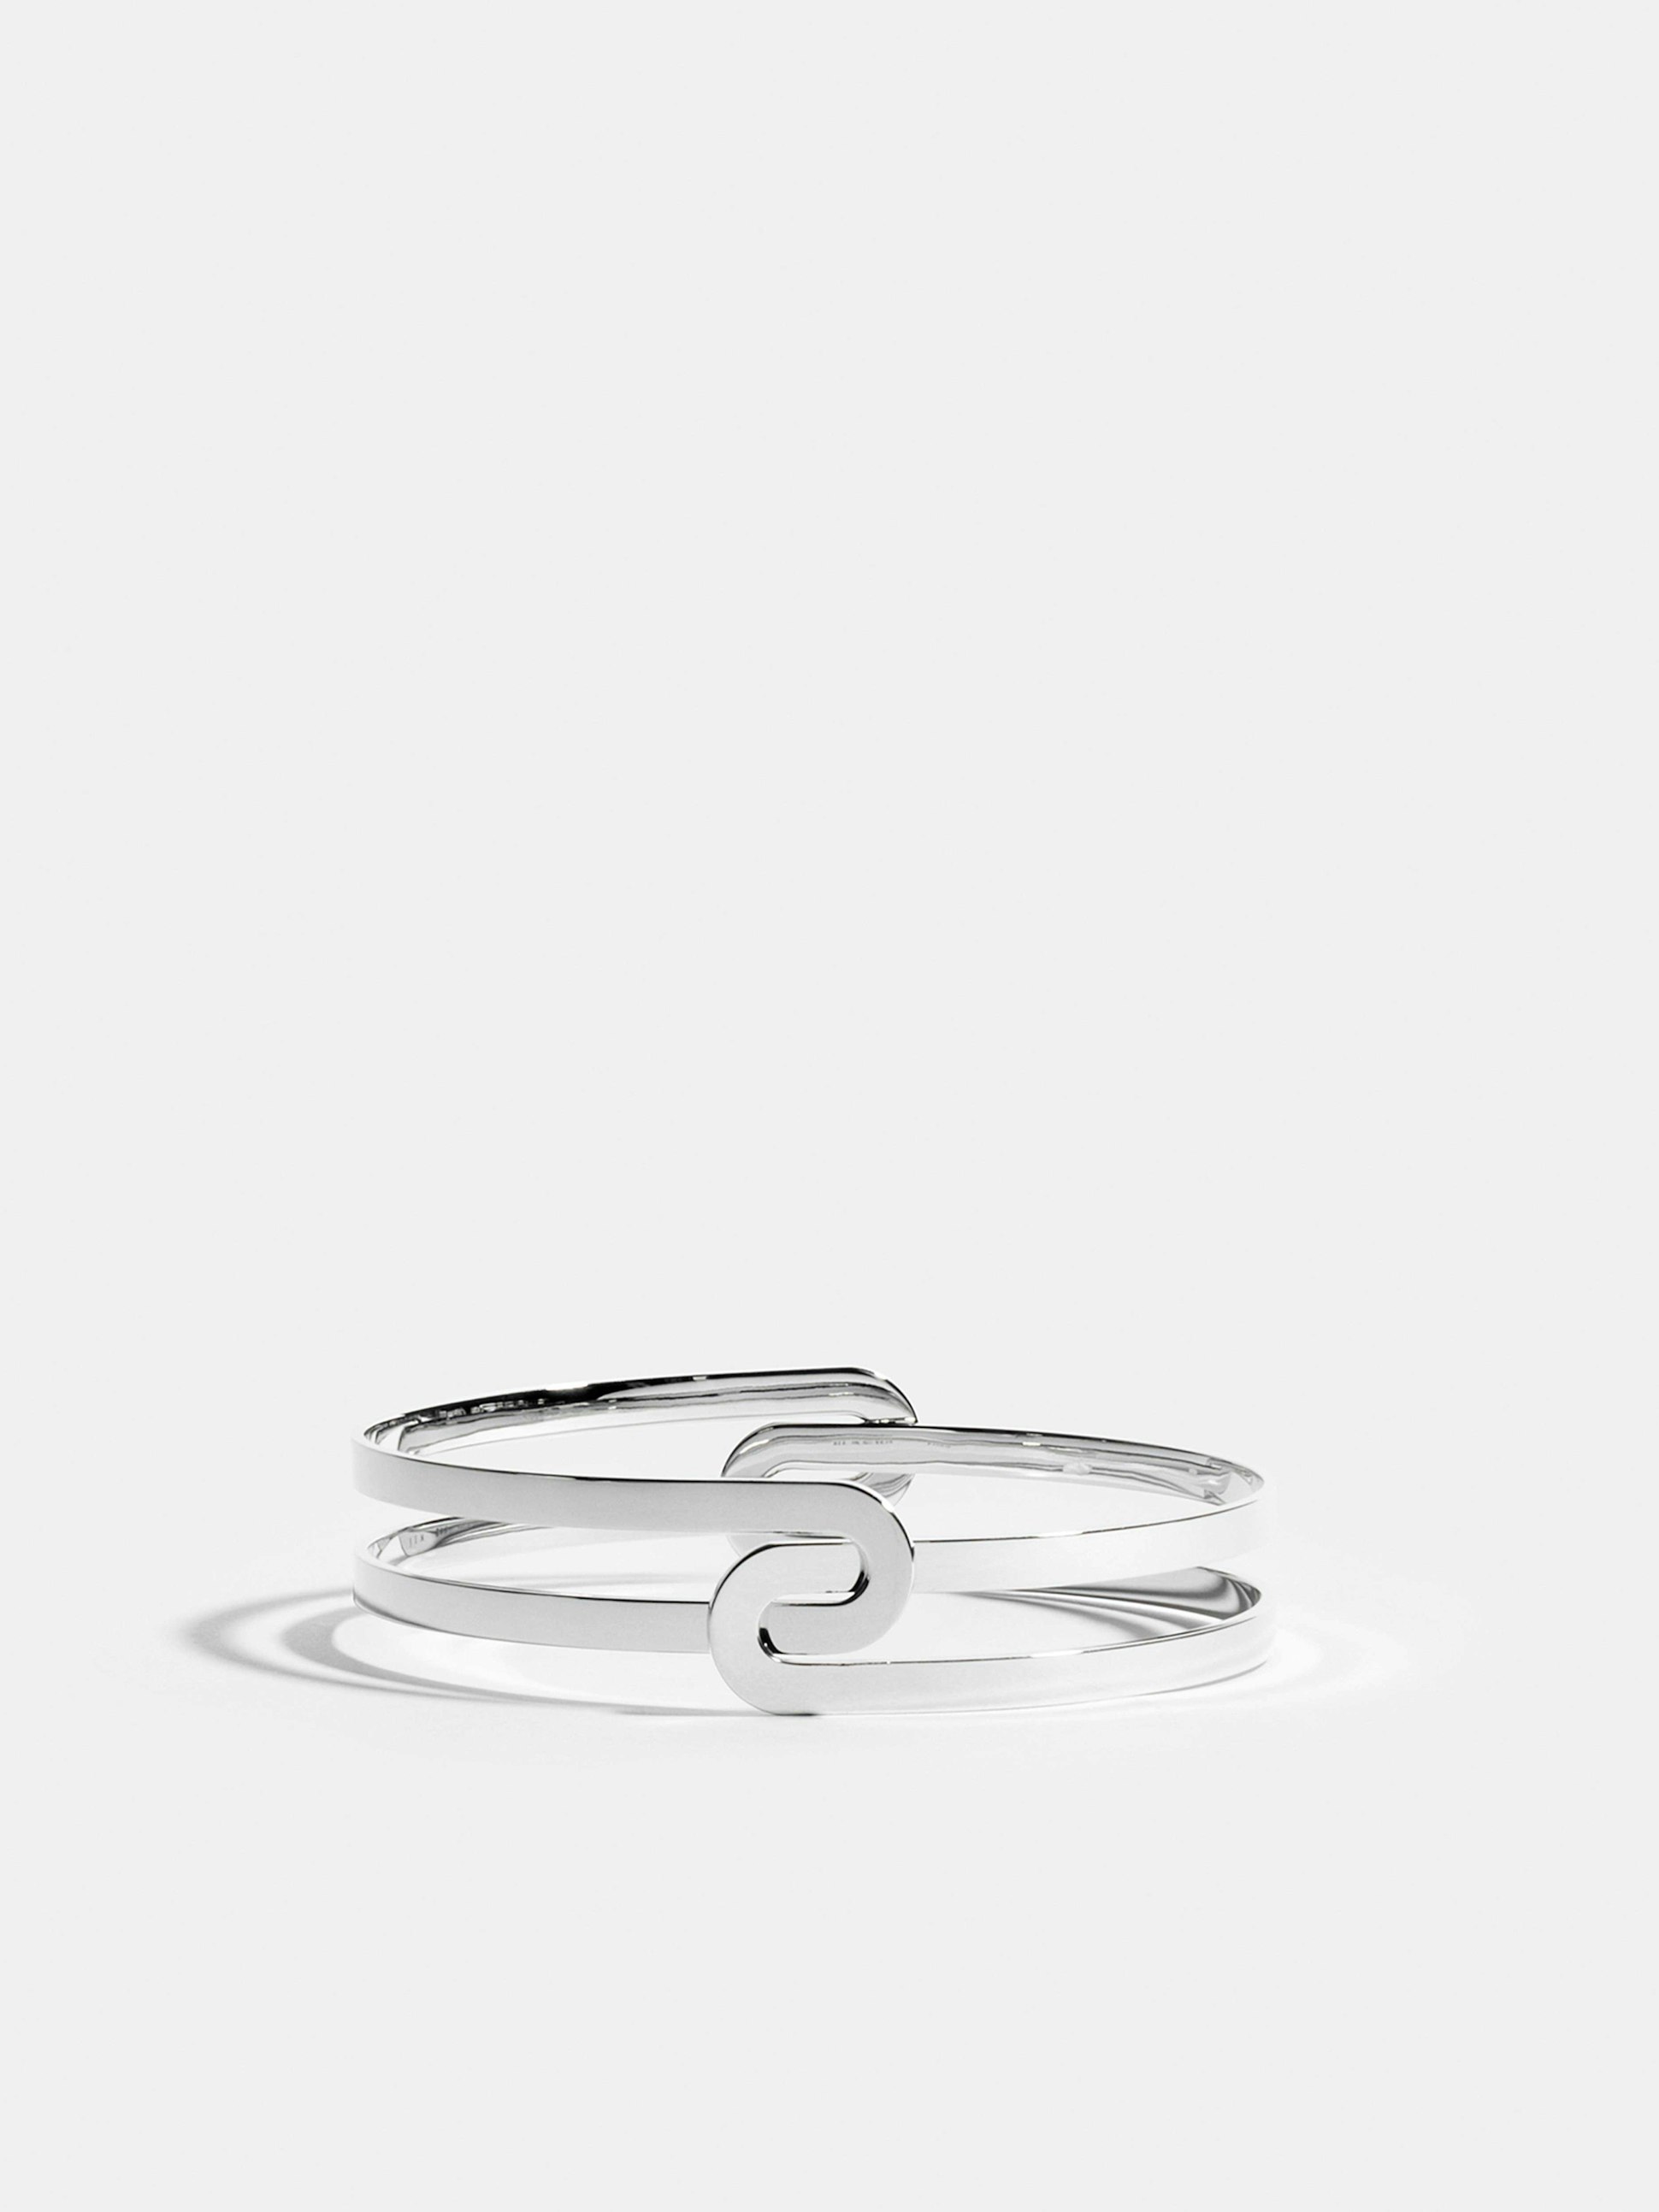 Bracelet Étreintes en Or blanc éthique 18 carats certifié Fairmined composé de deux demi-bracelets simples finition poli-brillant.